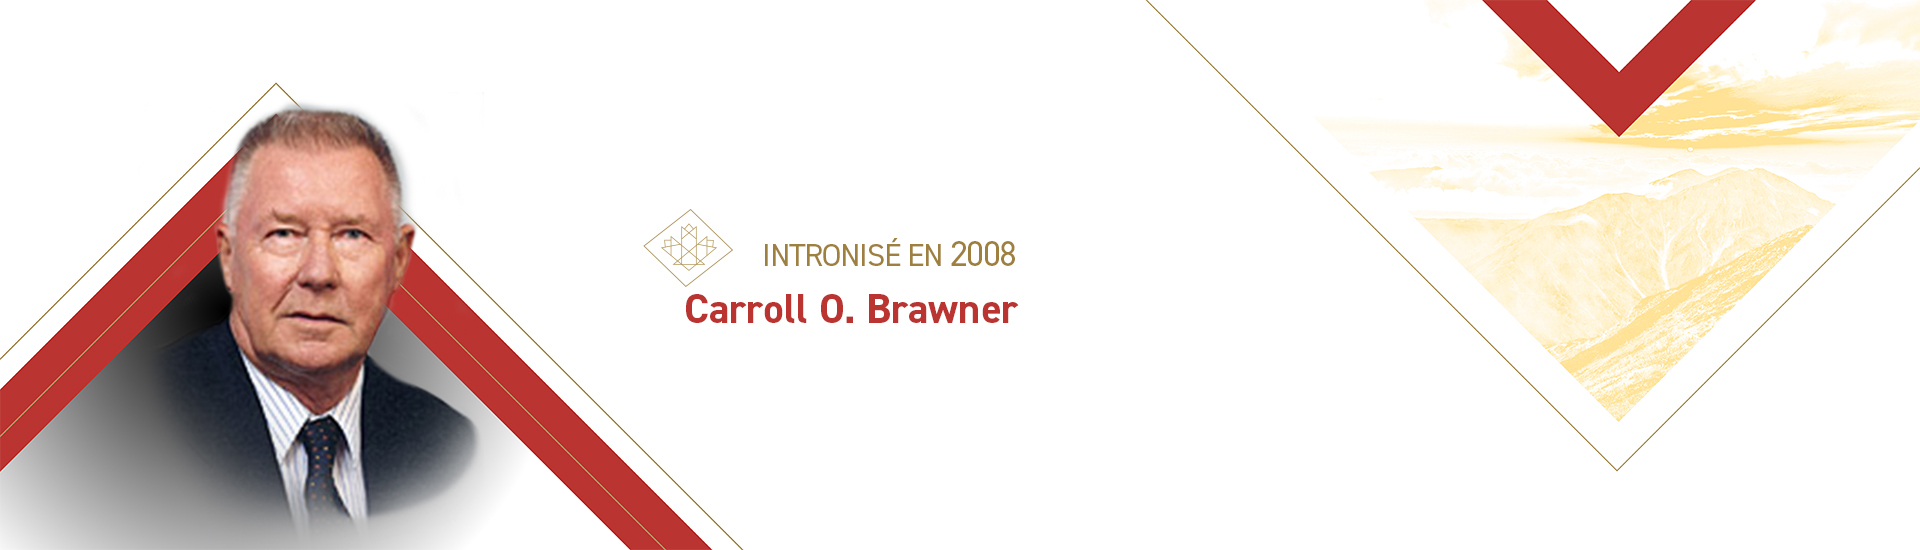 Carroll O. Brawner (1929-2019)